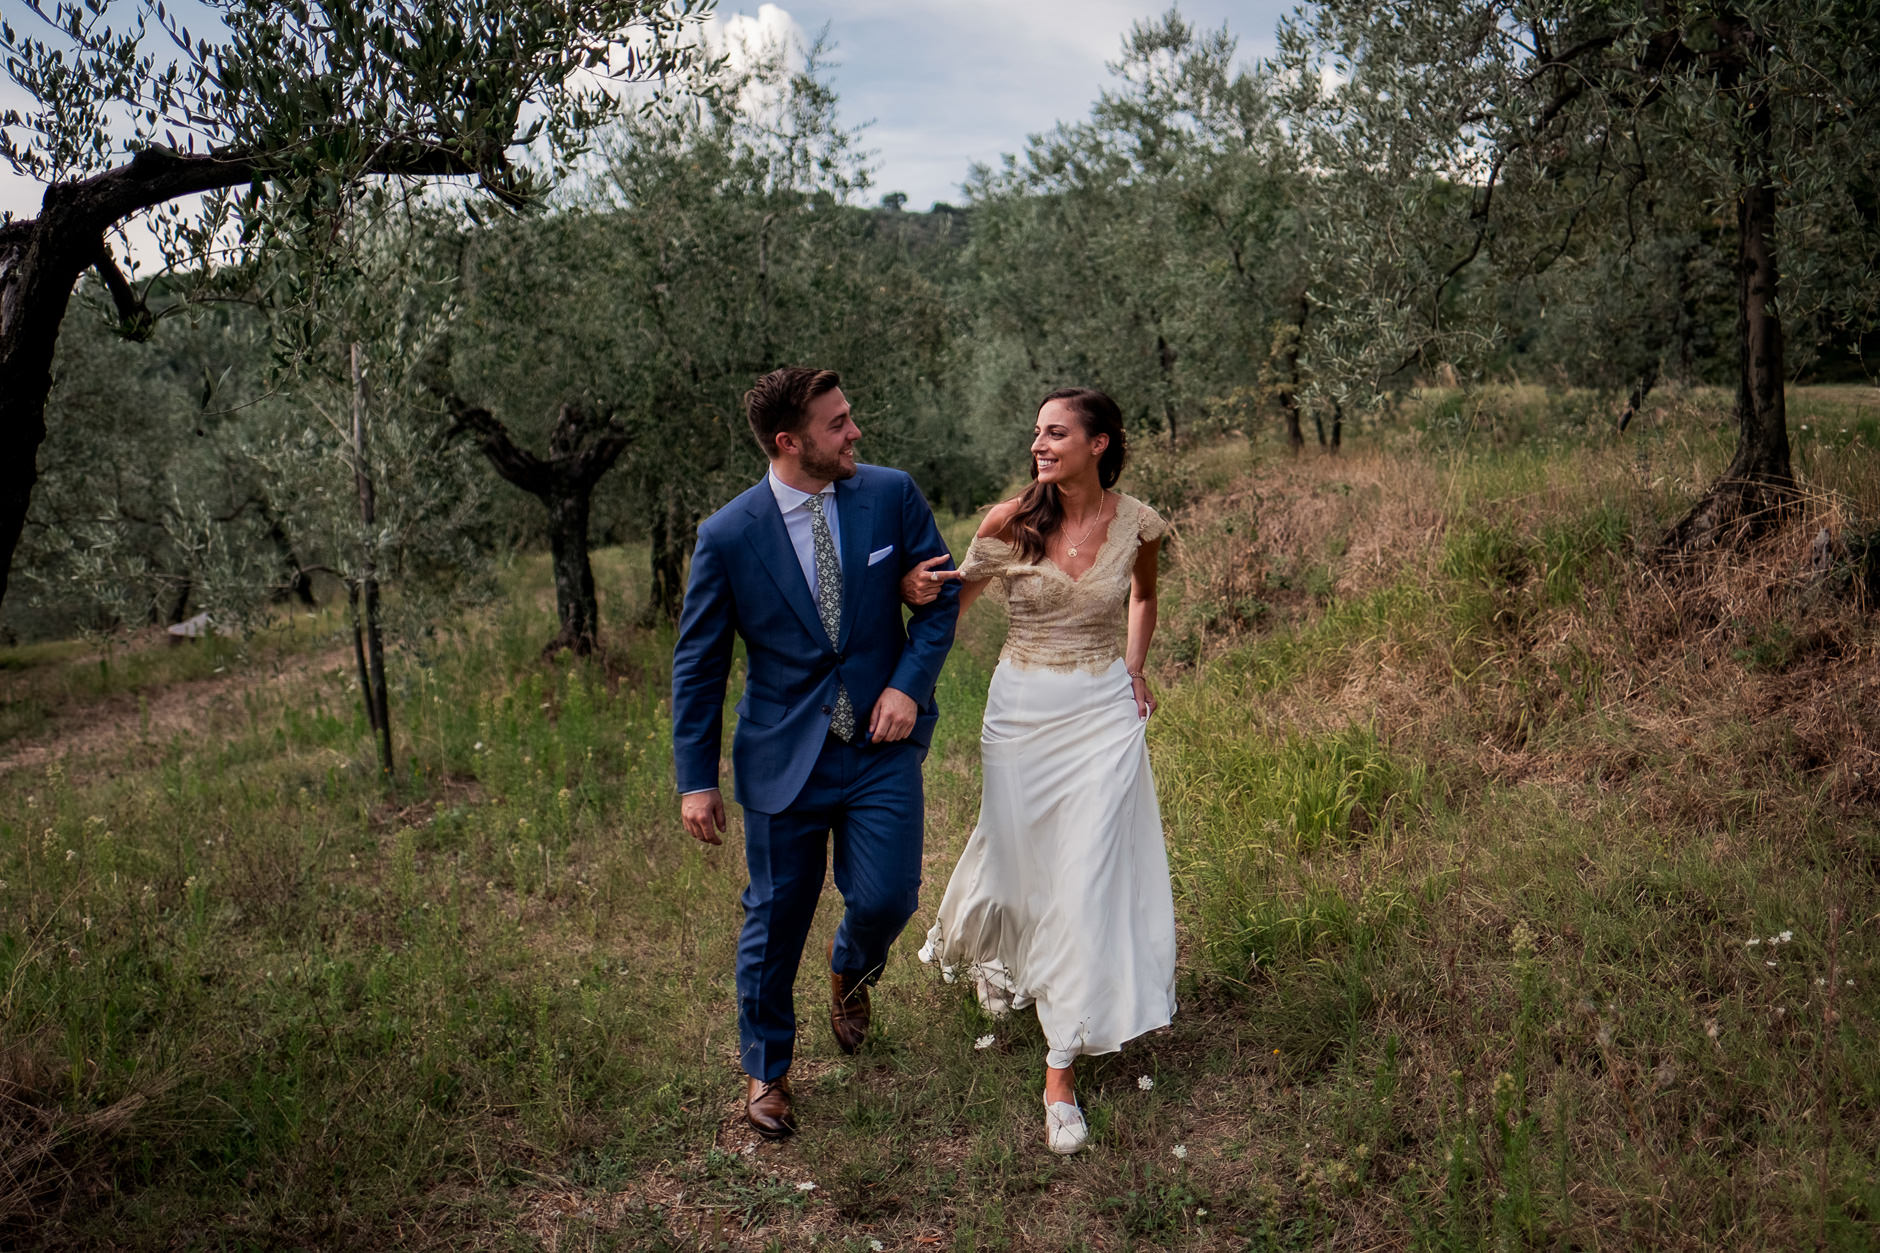 tuscany wedding photographer